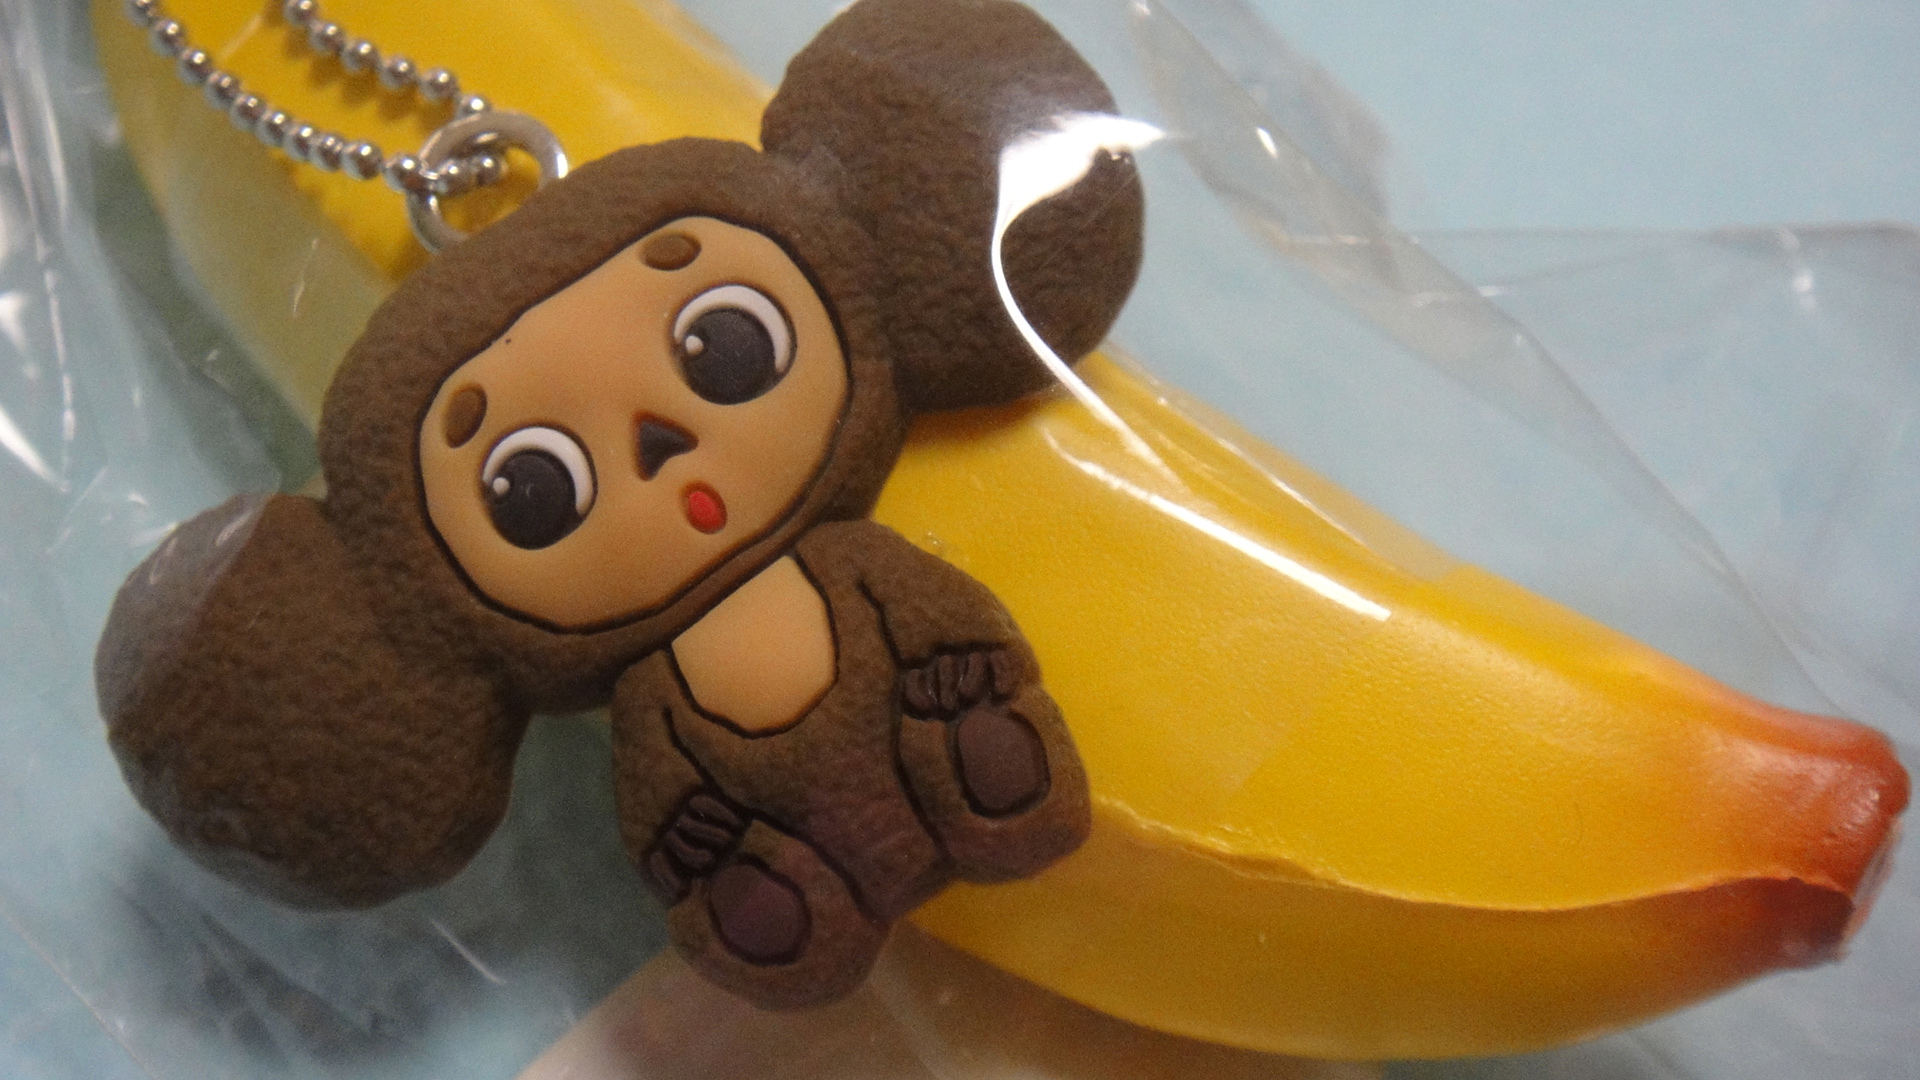 japangoods | Cheburashka with BANANA squishy | Online Store Powered ...